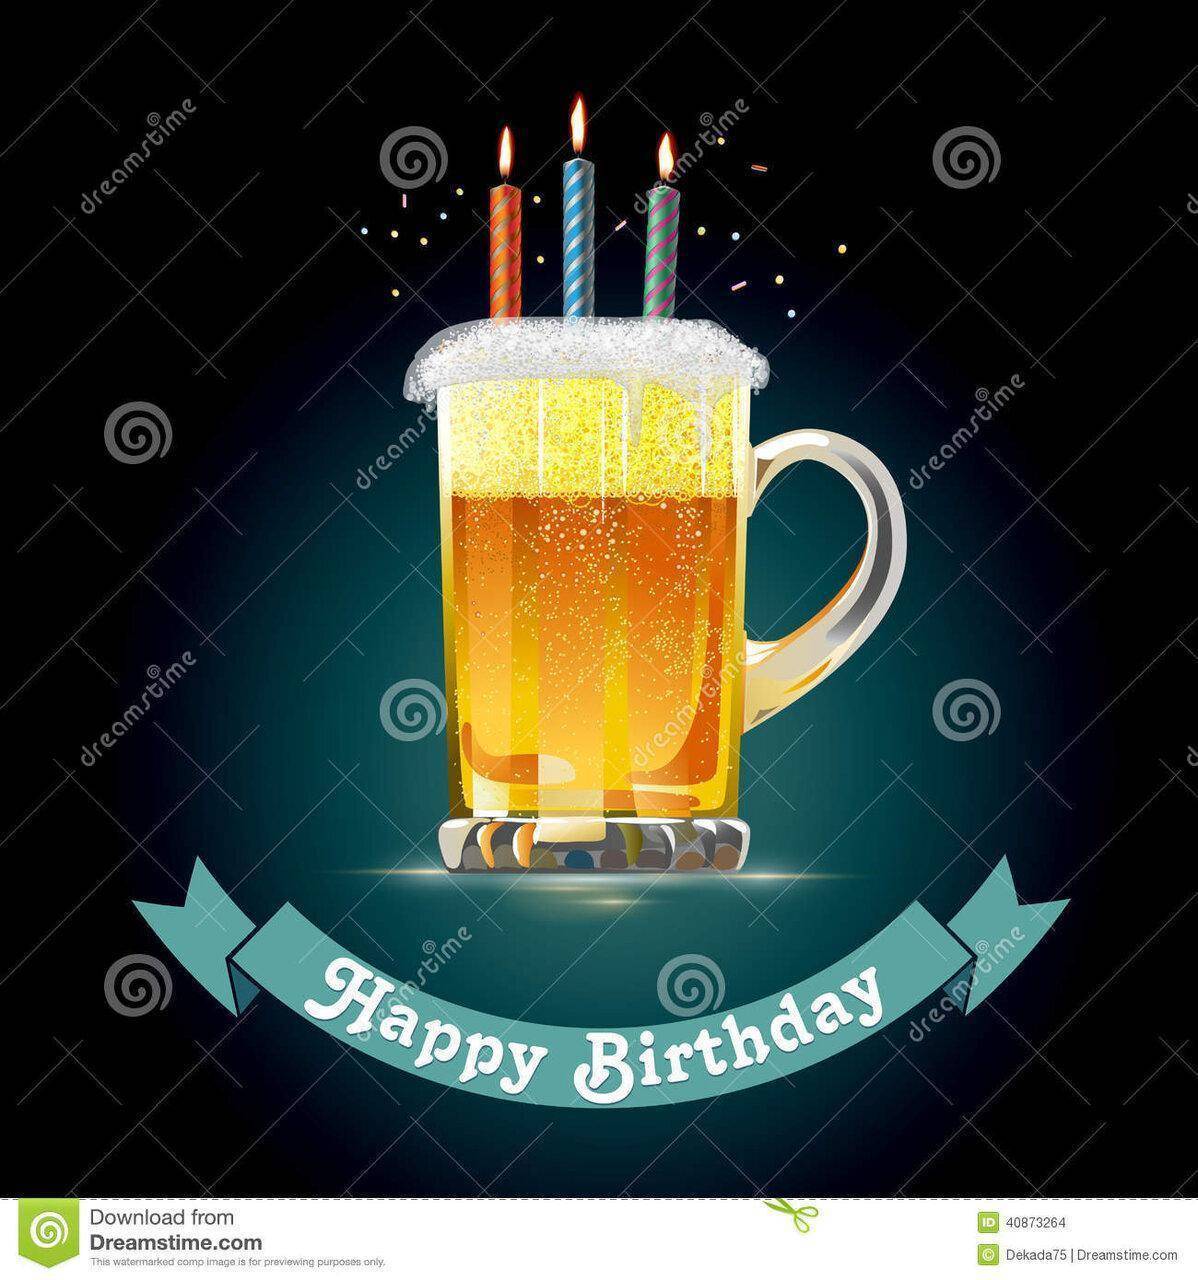 tarjeta-del-feliz-cumpleaños-para-una-persona-que-ama-la-cerveza-40873264.jpg